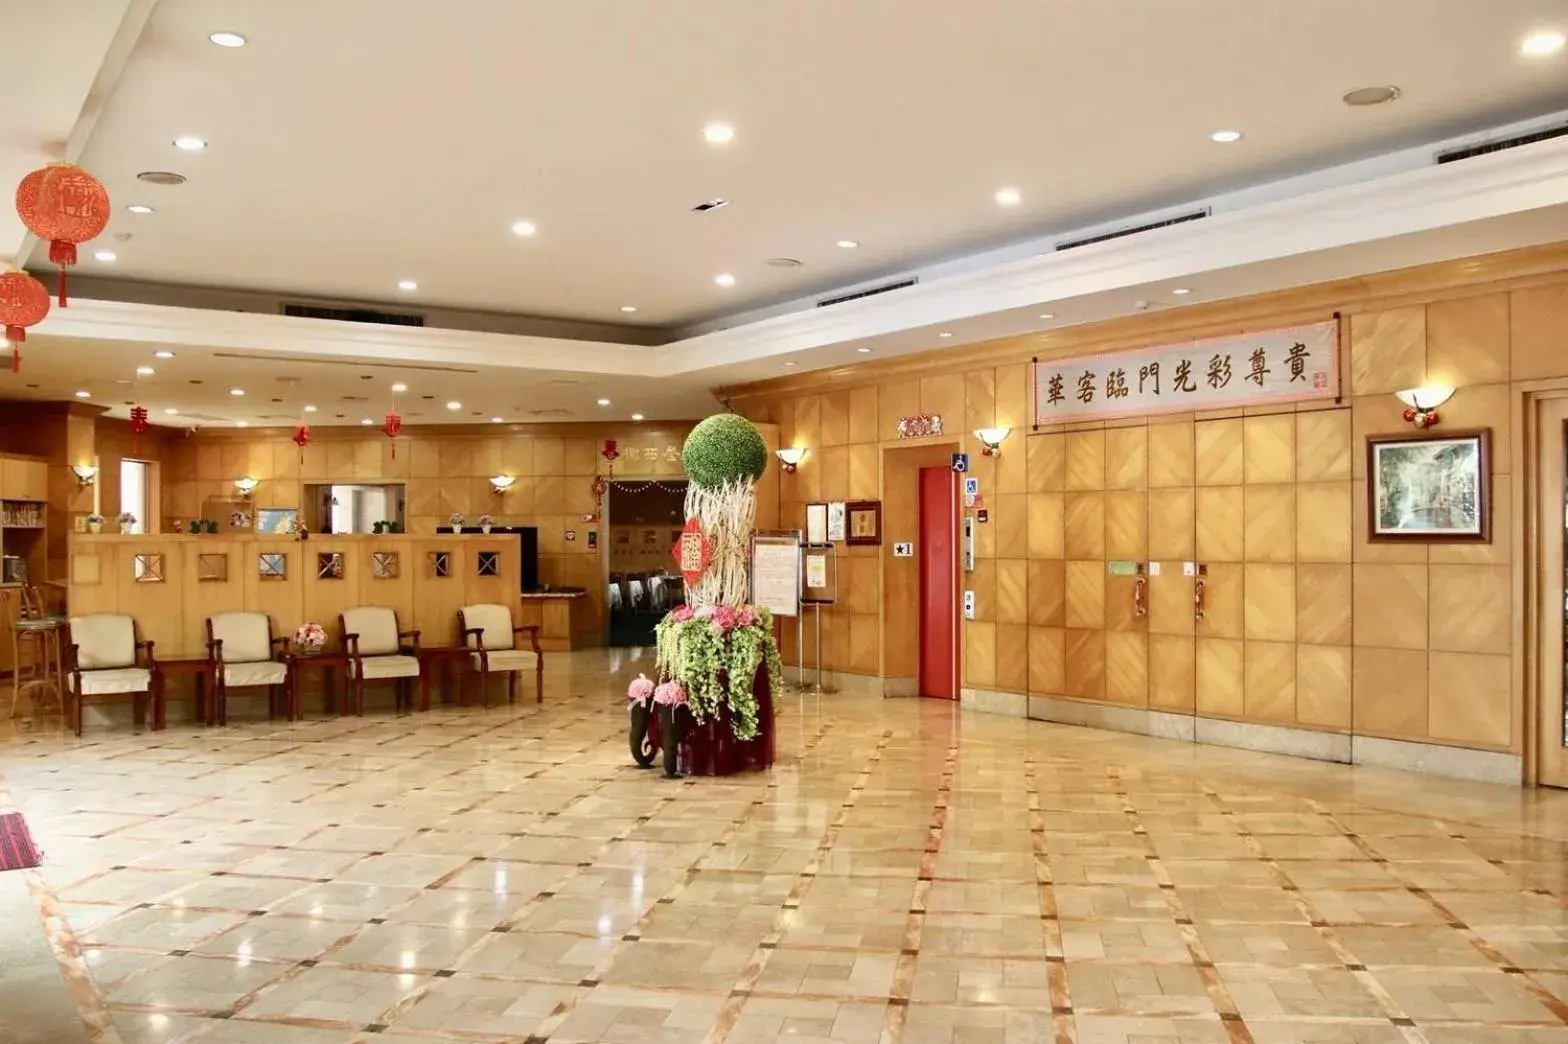 Lobby or reception, Lobby/Reception in Oriental Hotel